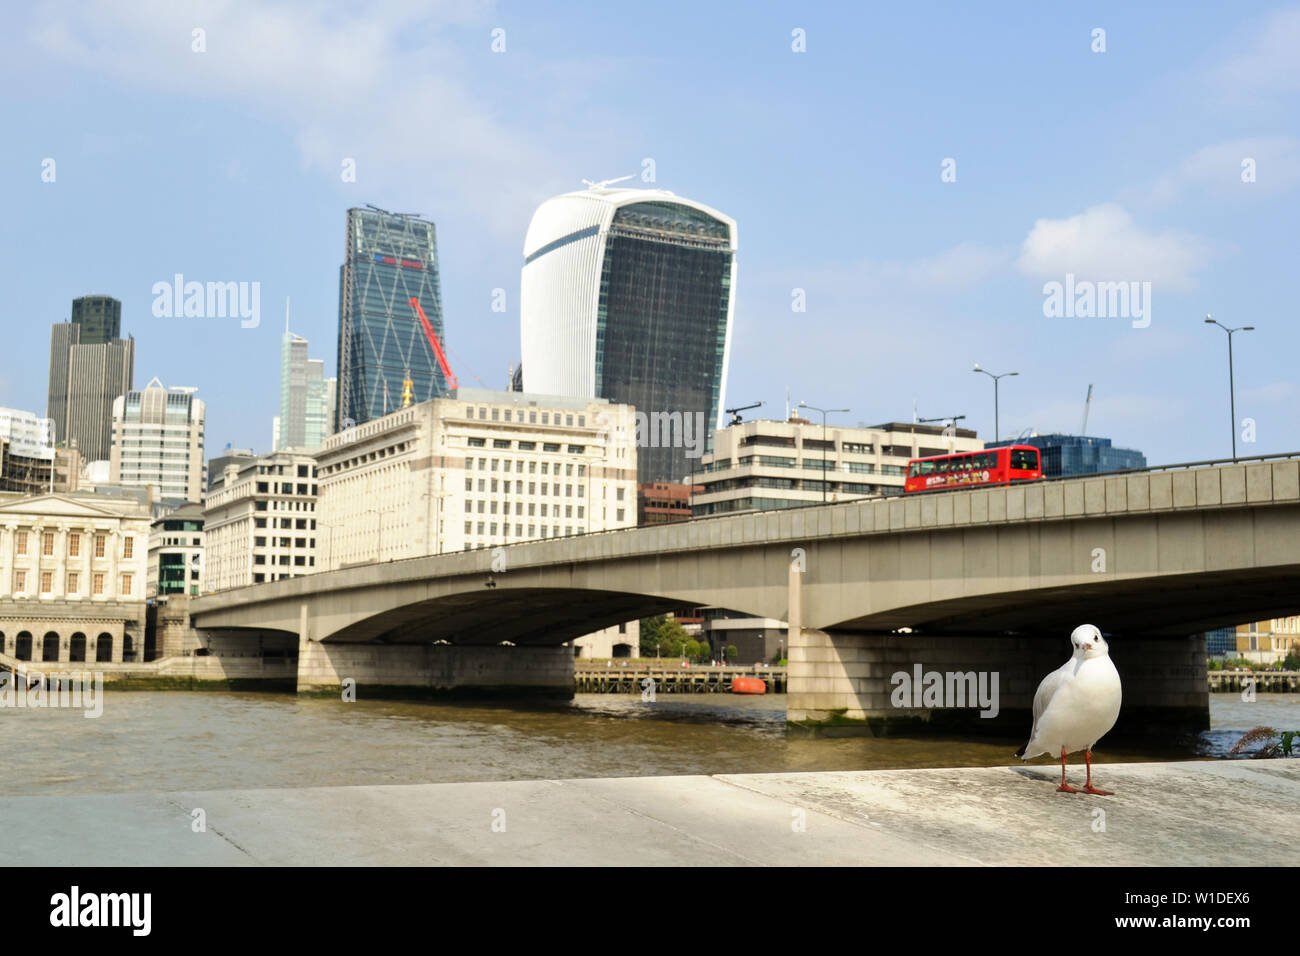 Londres/UK - Septiembre 7, 2014: gaviota blanca de pie en la orilla con la City de Londres, el río Támesis y el puente de Londres en segundo plano. Foto de stock